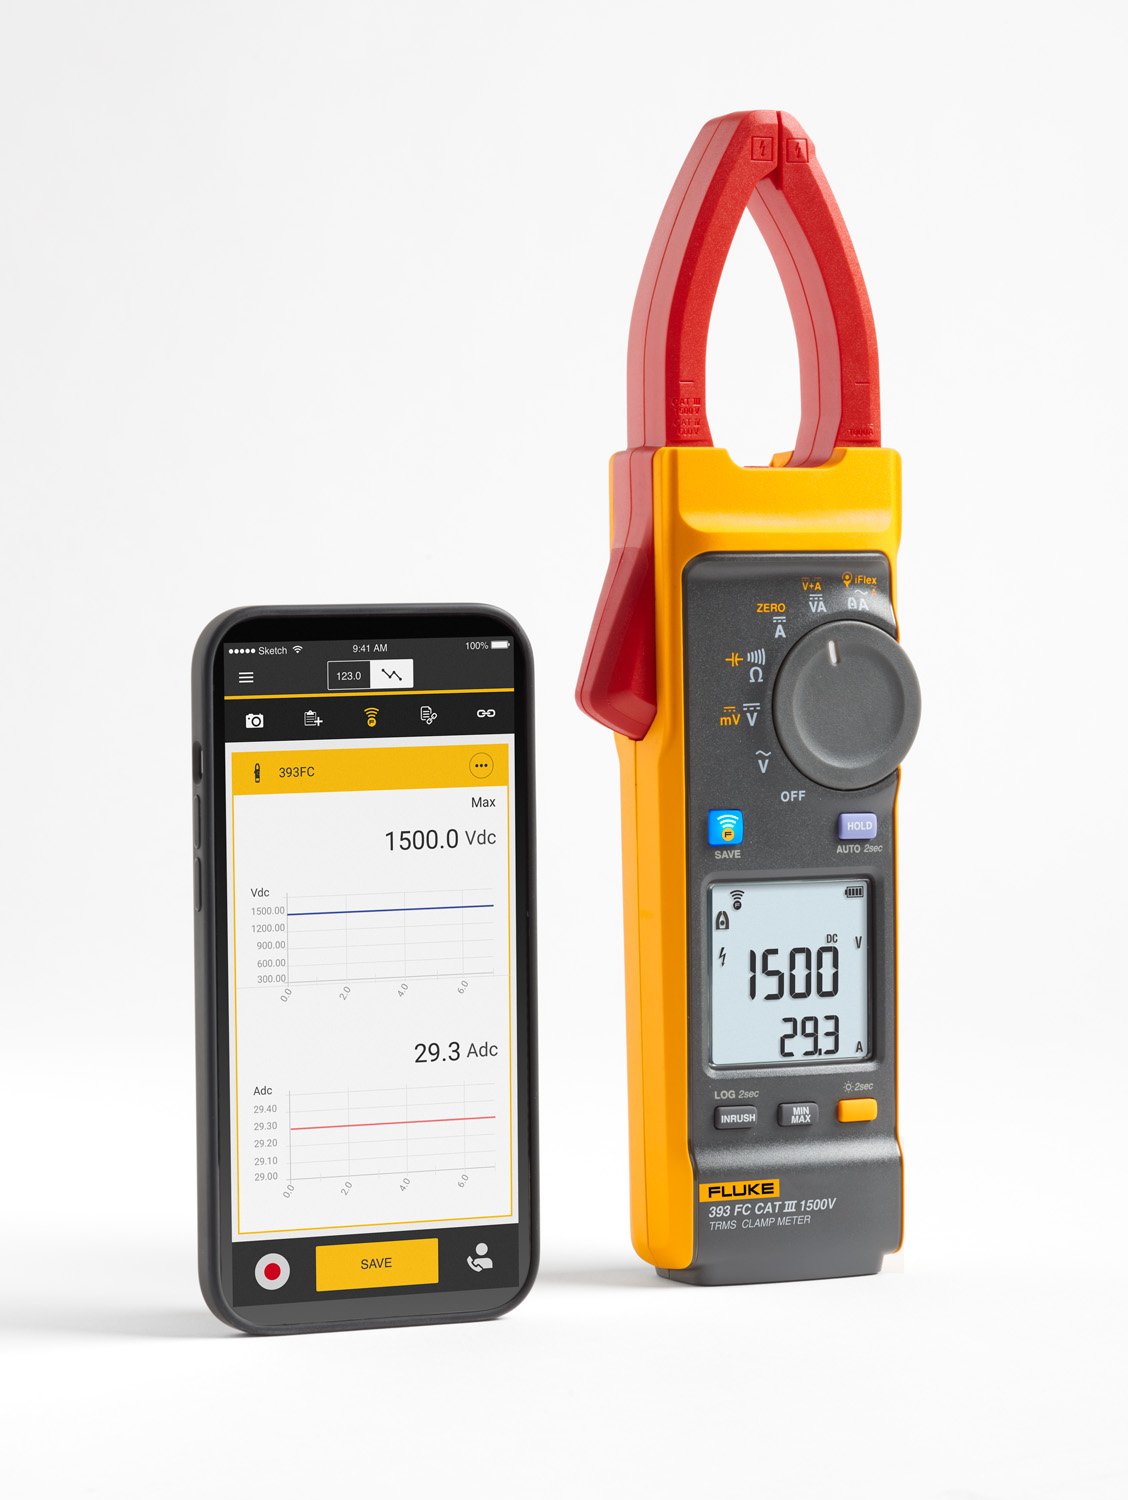 Billede af Fluke 393 FC KAT III 1500 V sand-RMS tangmeter til højre og Fluke Connect appen vises på en smartphone ved siden af den til venstre